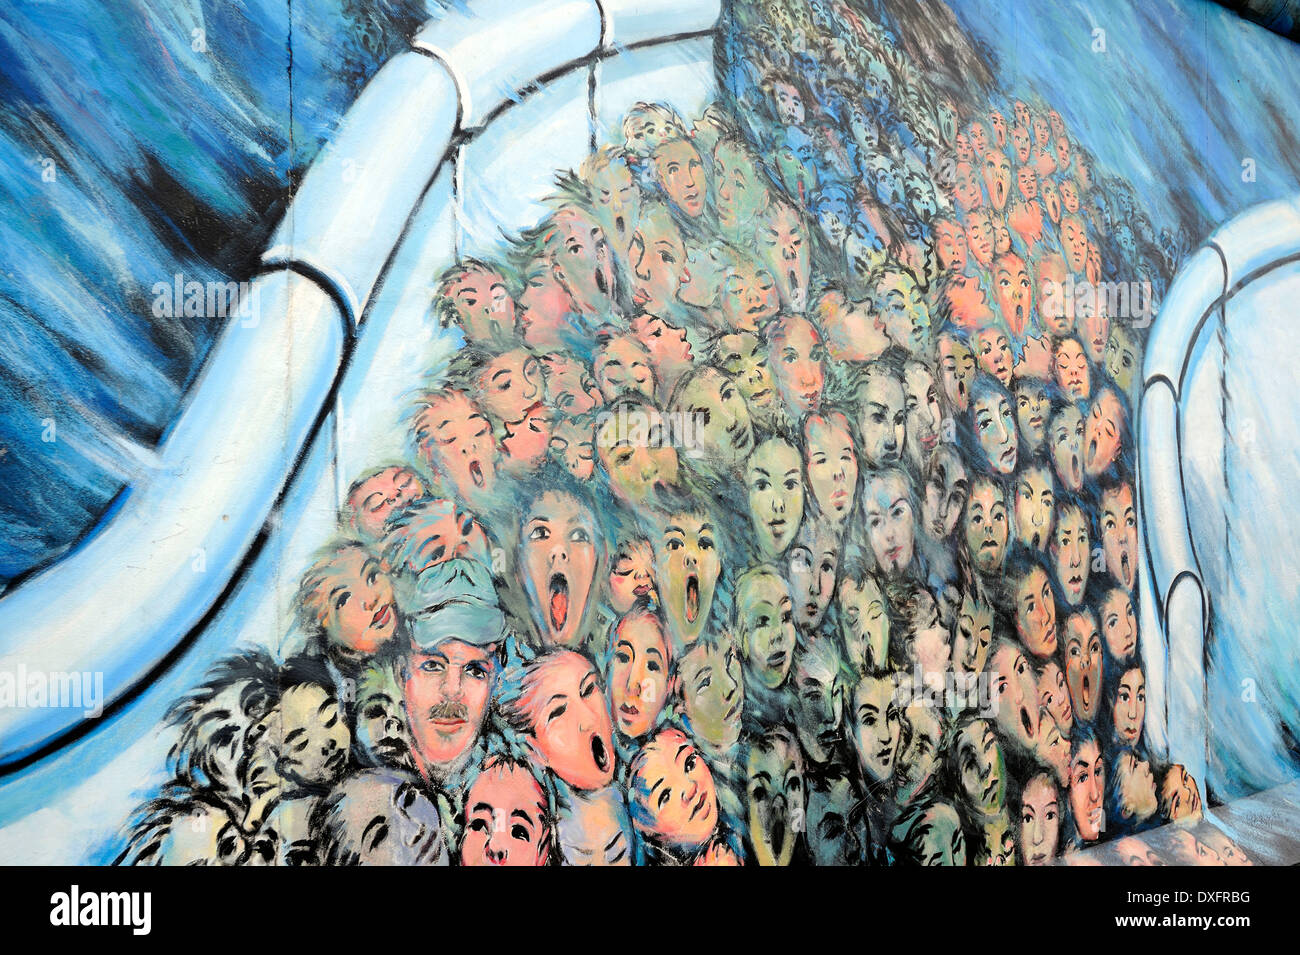 Rottura della folla attraverso il muro di Berlino, dipinto sul muro di Berlino, la East Side Gallery di Berlino, Germania, Europa Foto Stock